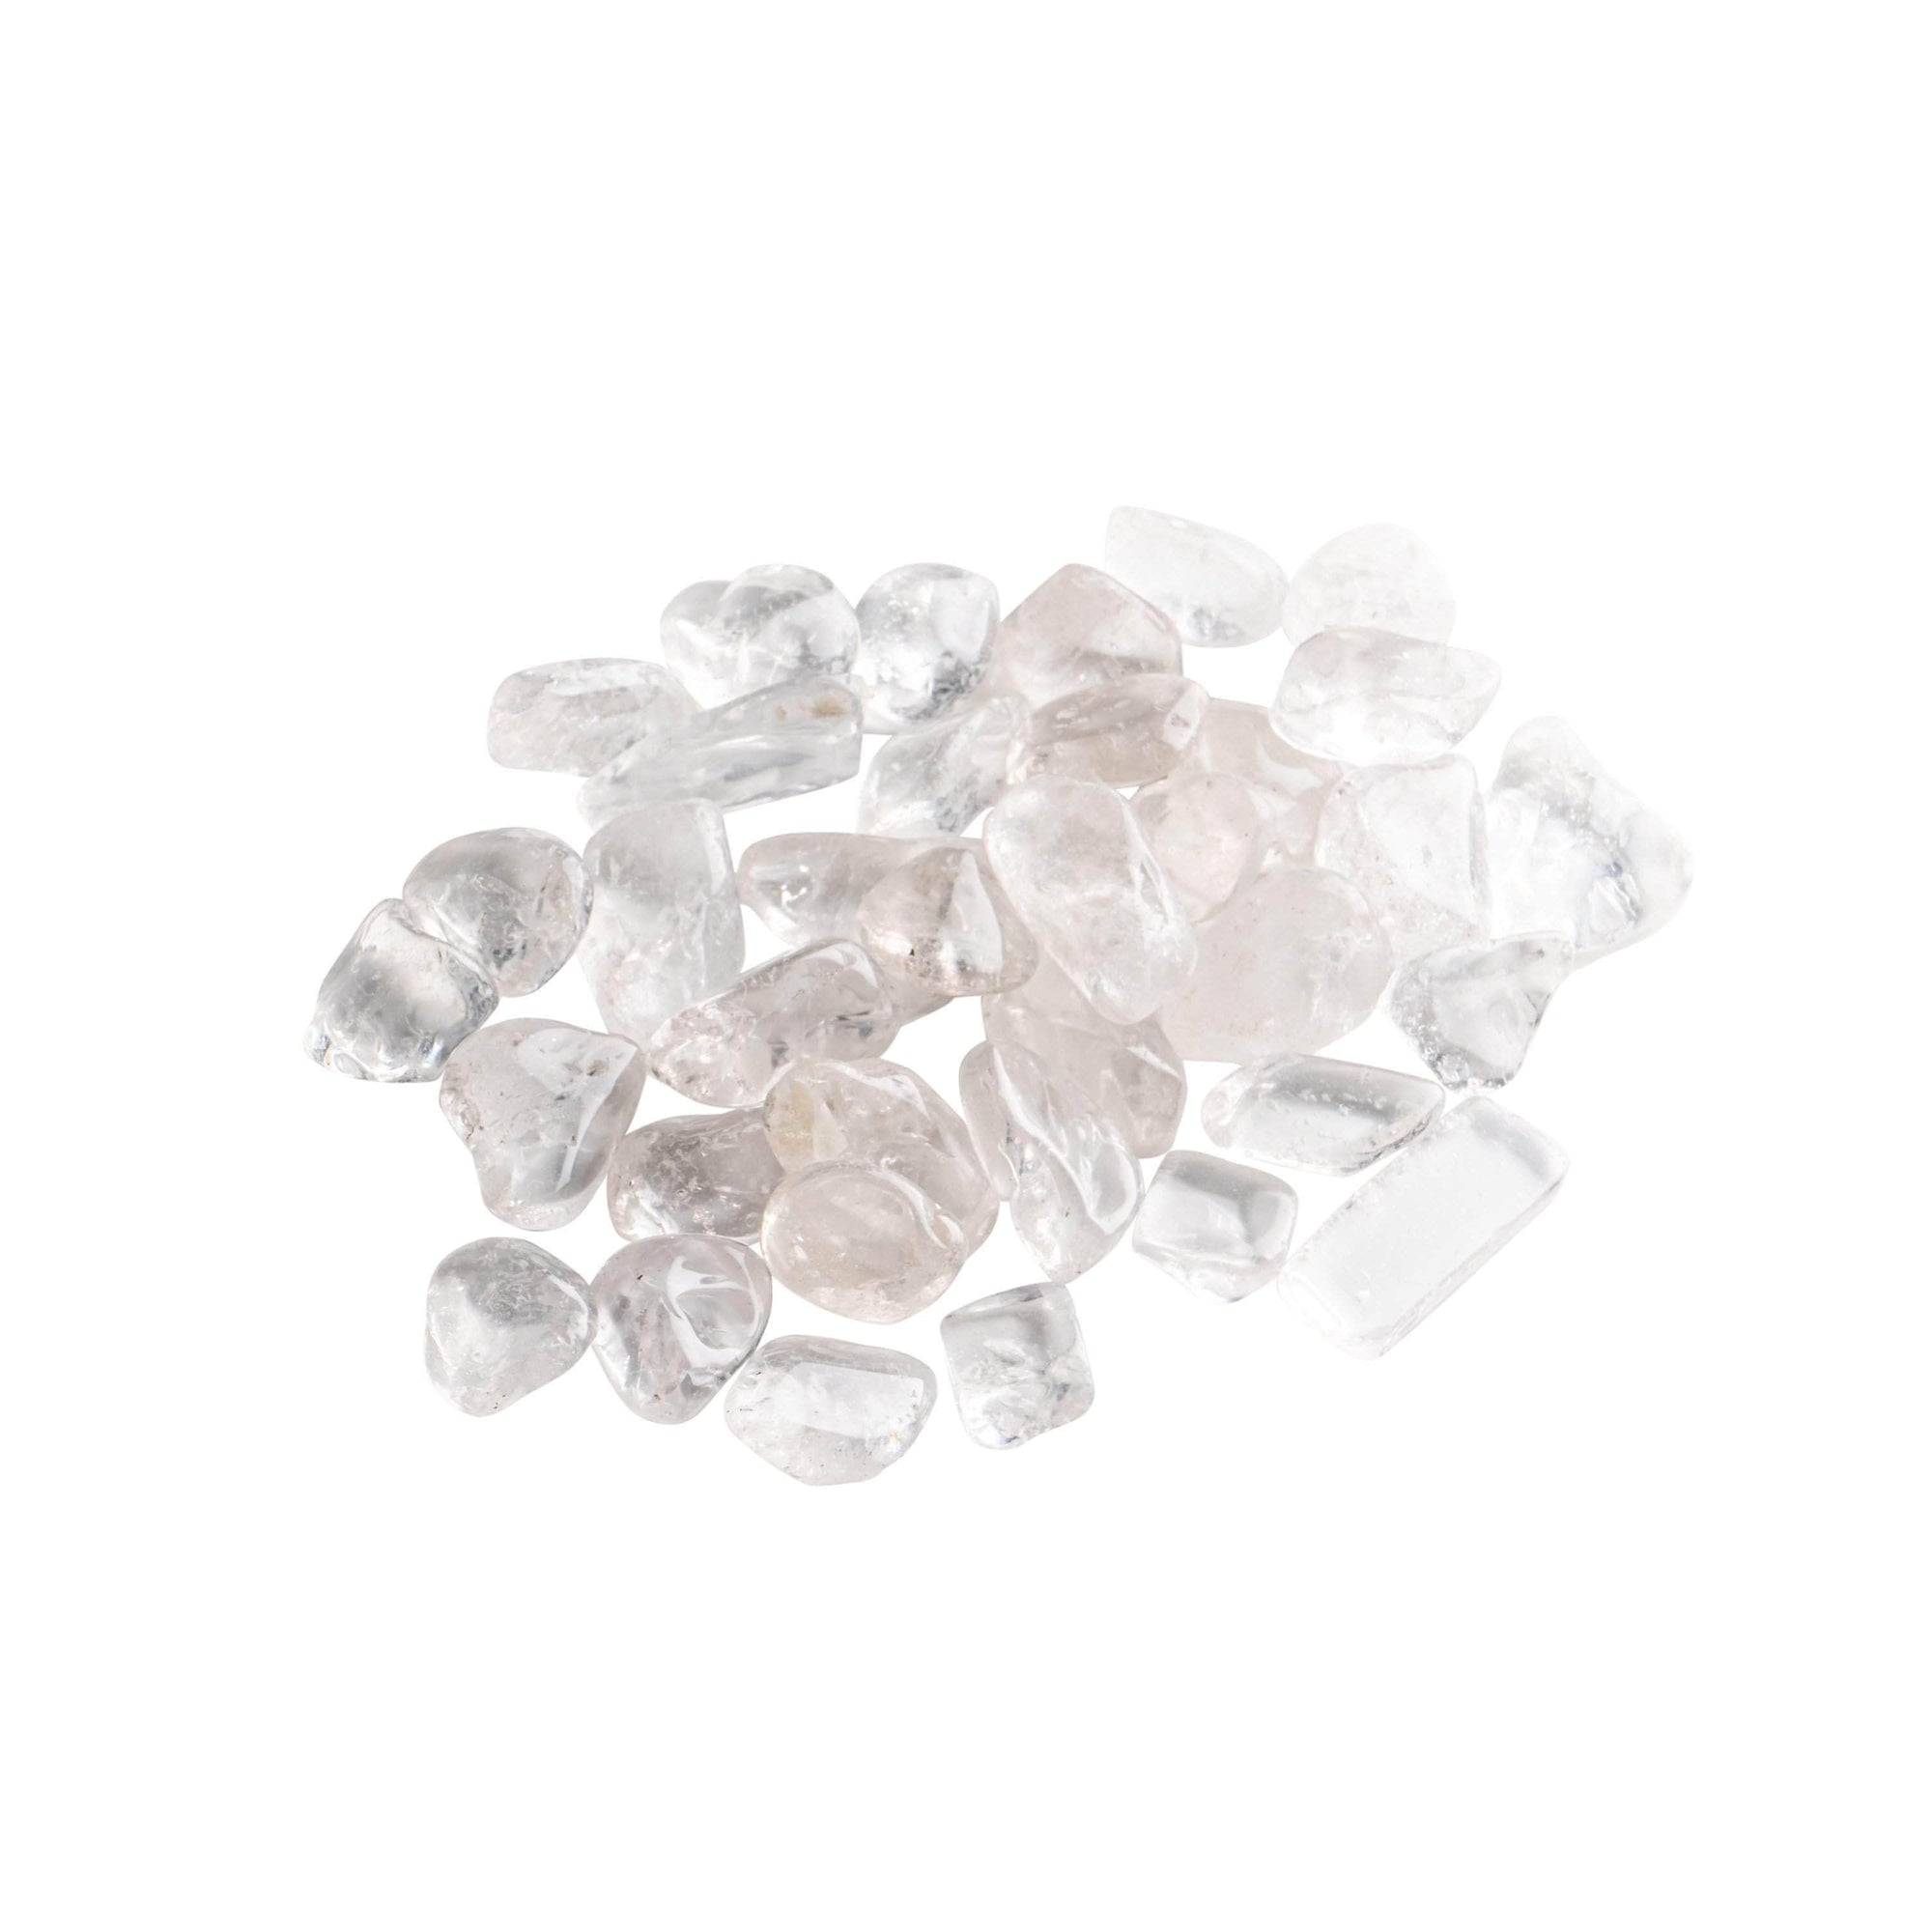 Crystal Infused Clear Quartz Gemstone Elixir